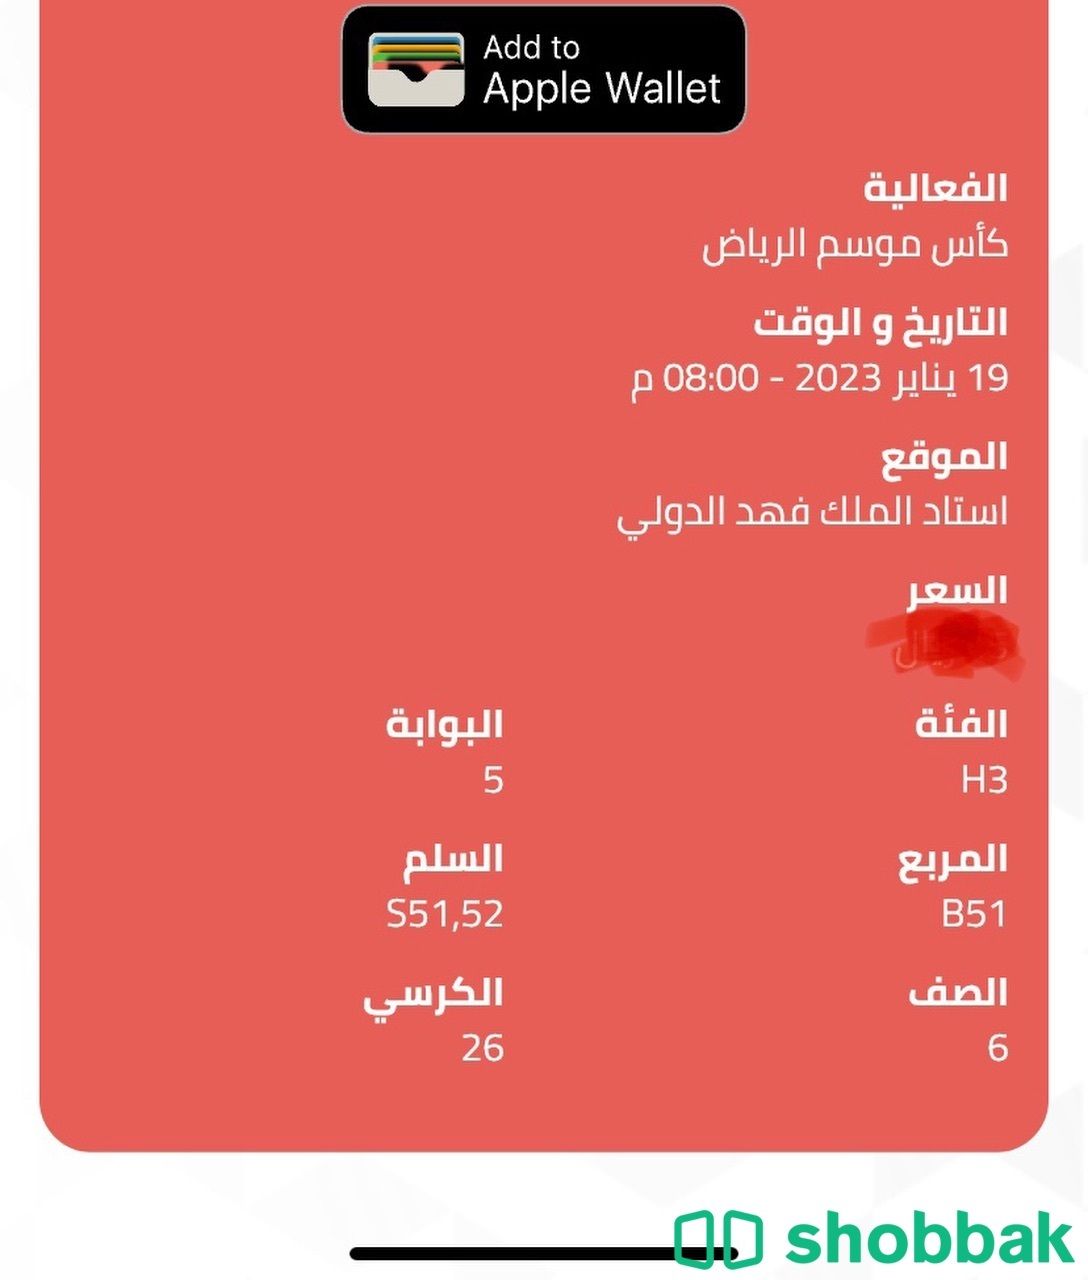 تذاكر بالواجهه الهلال والنصر ضد باريس كأس موسم الرياض Shobbak Saudi Arabia